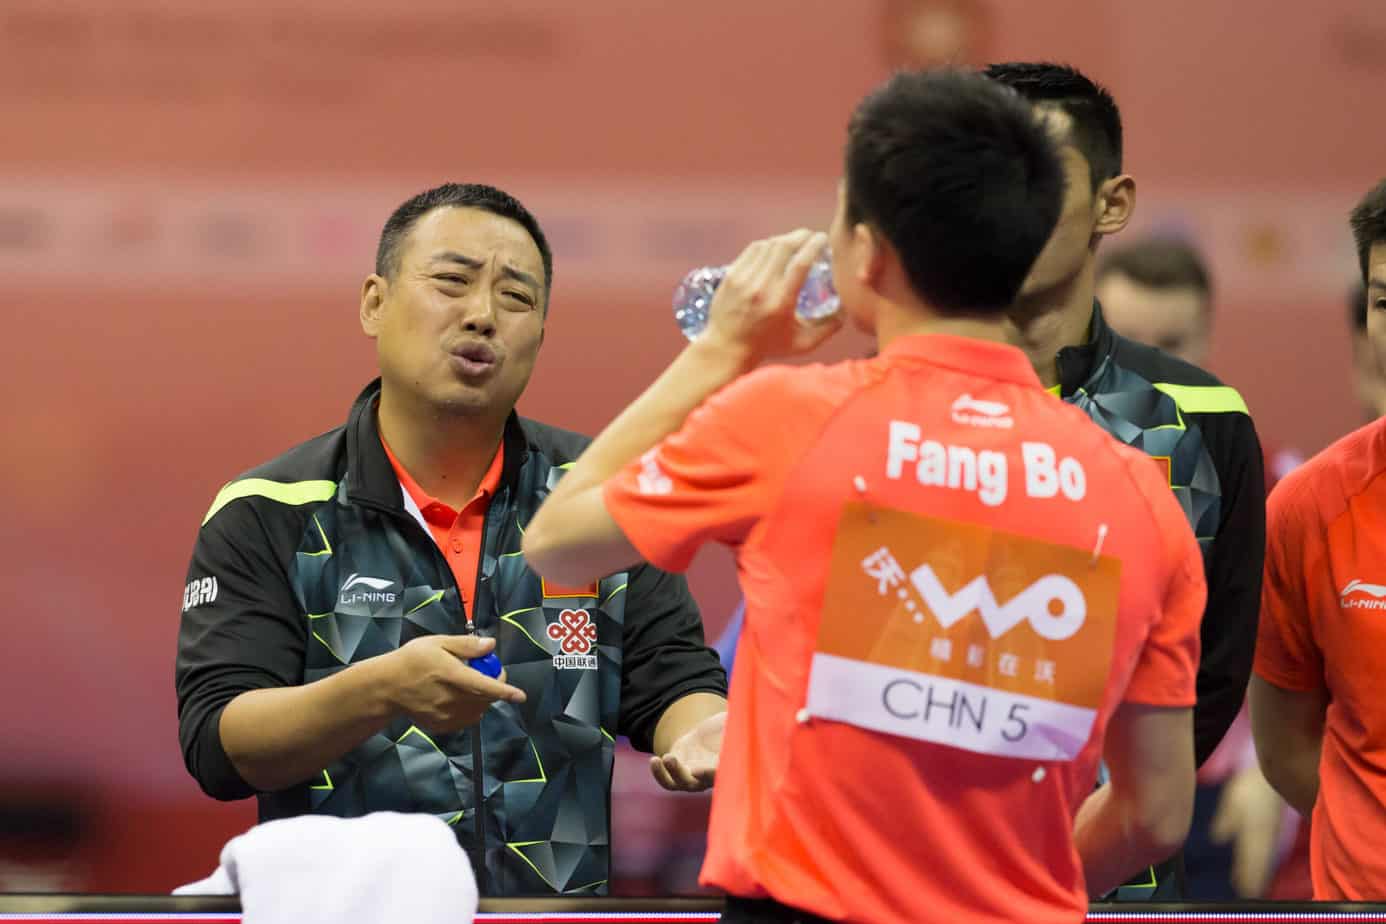 Fang_Bo_Liu_Guoliang_with_his_team